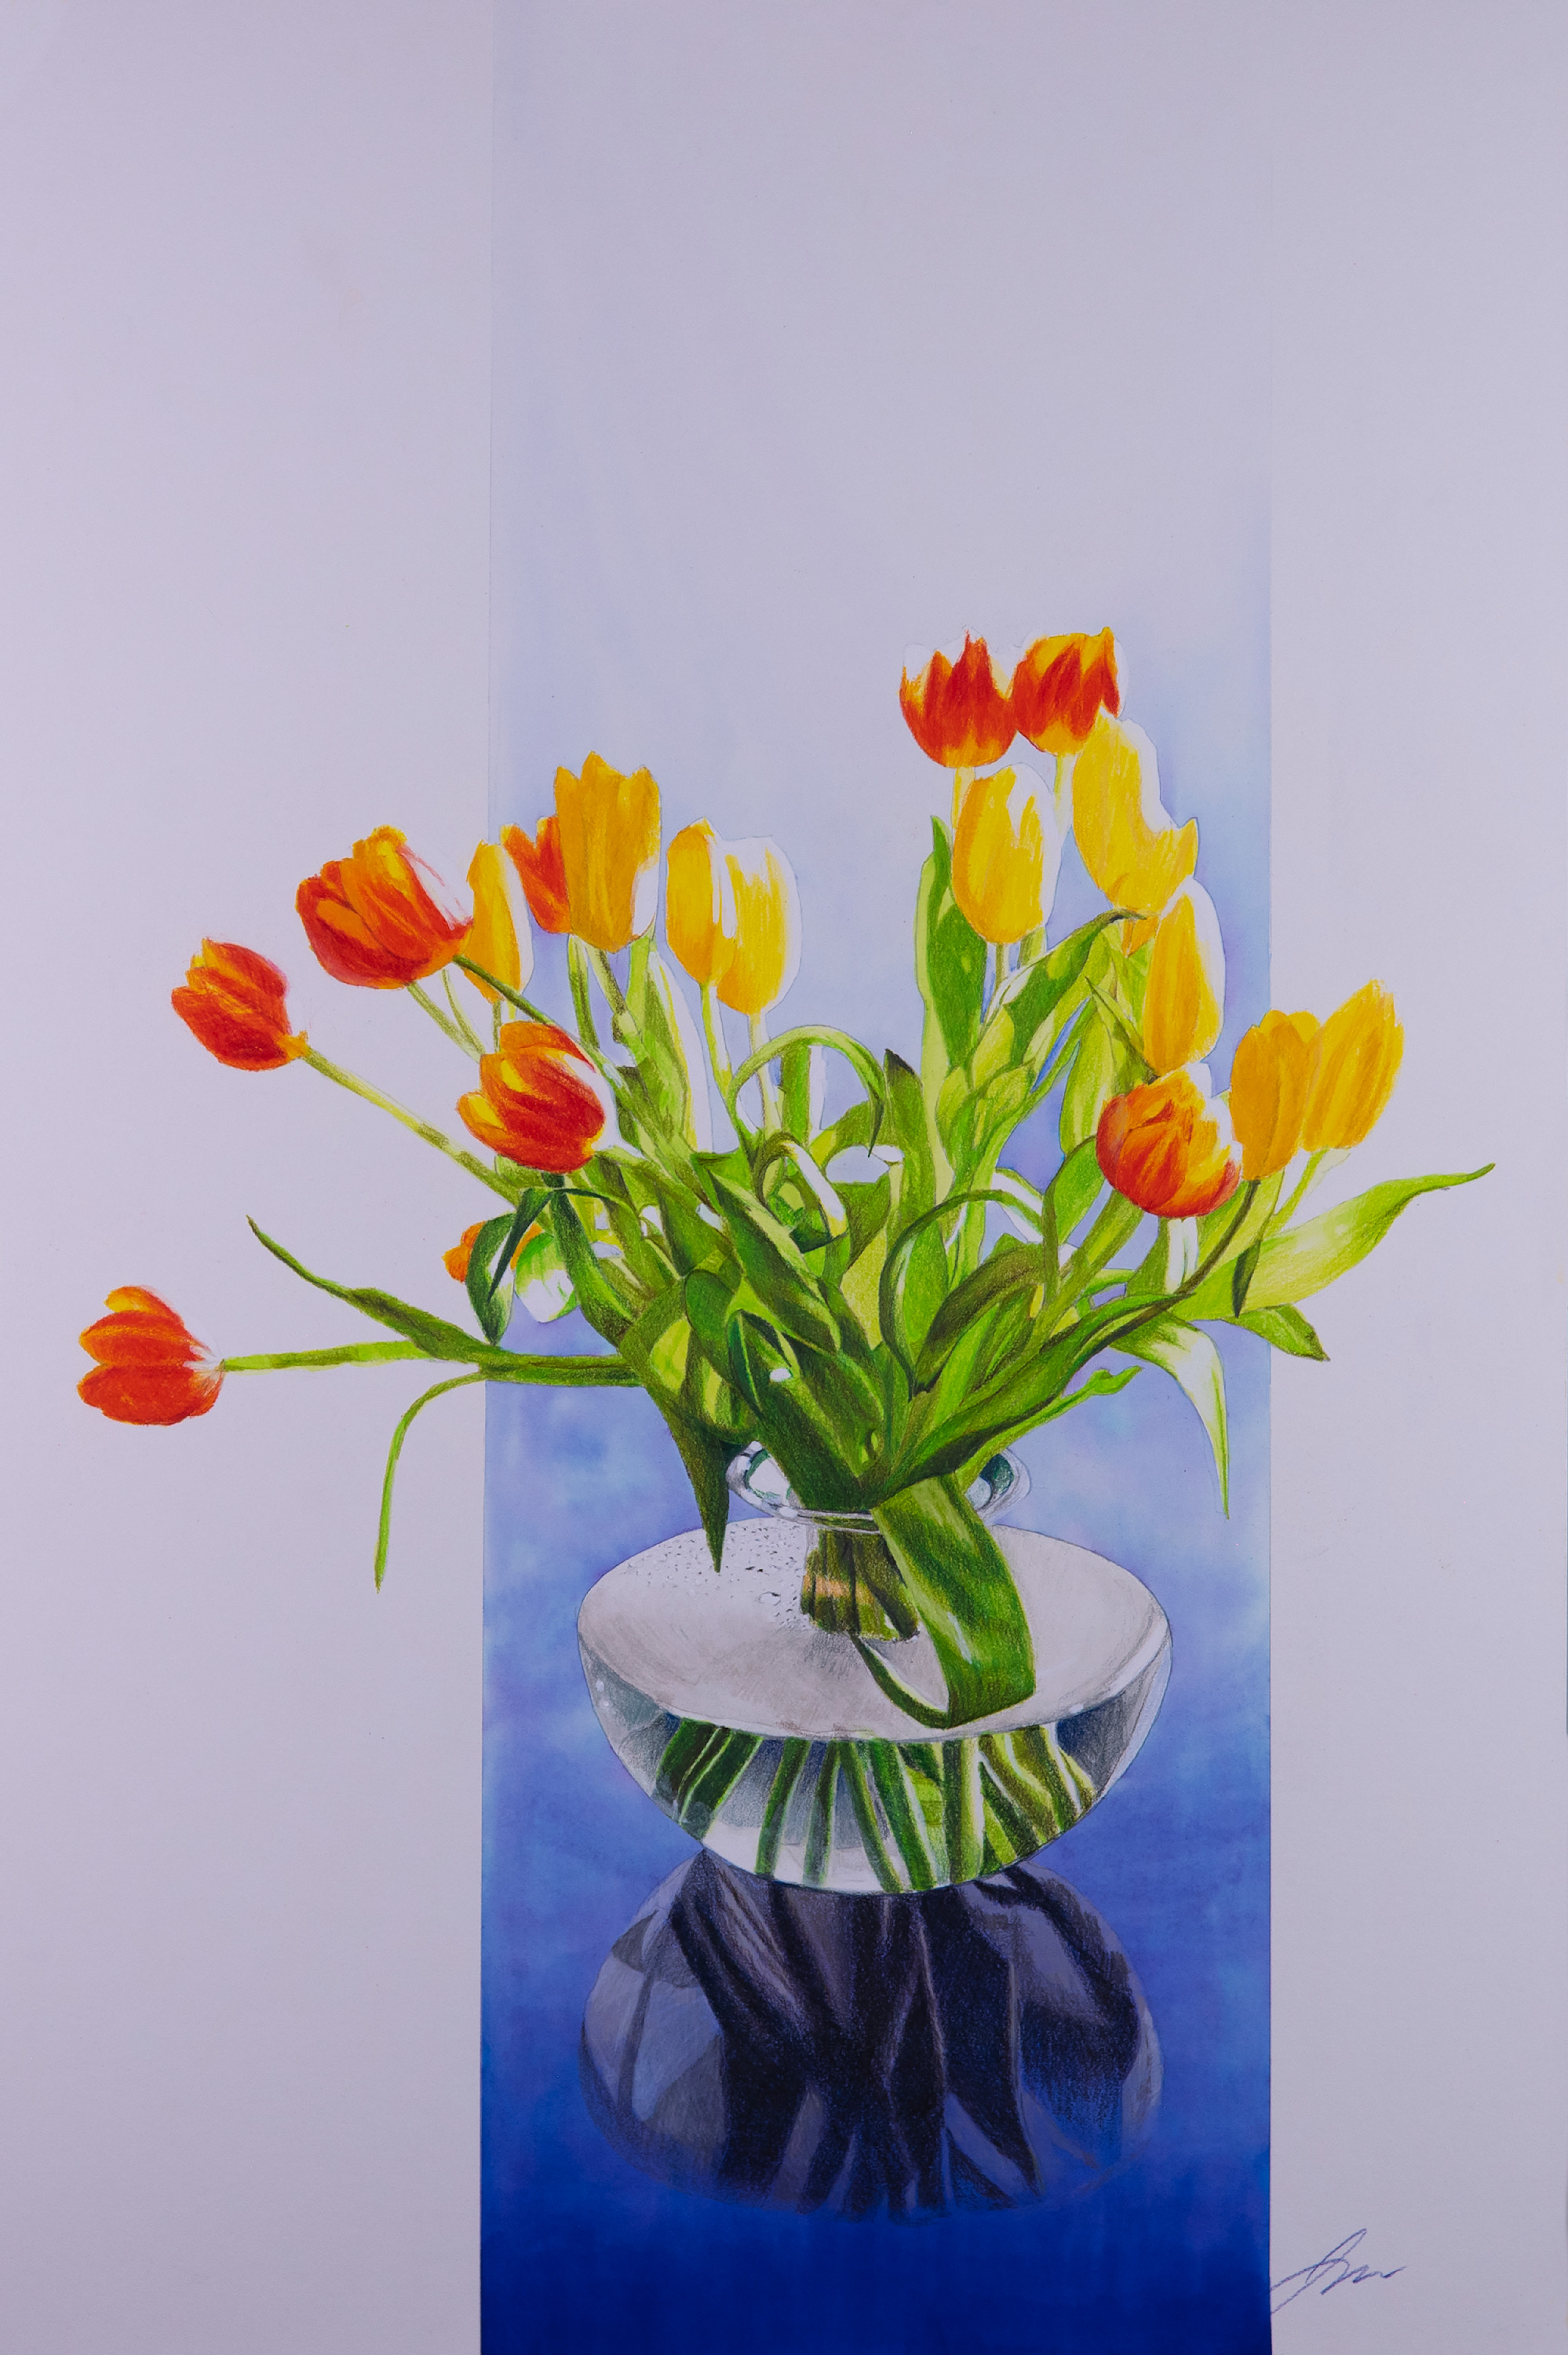 Jon strawbridge   2022 10 03 21.27.38   tulips x62fsq